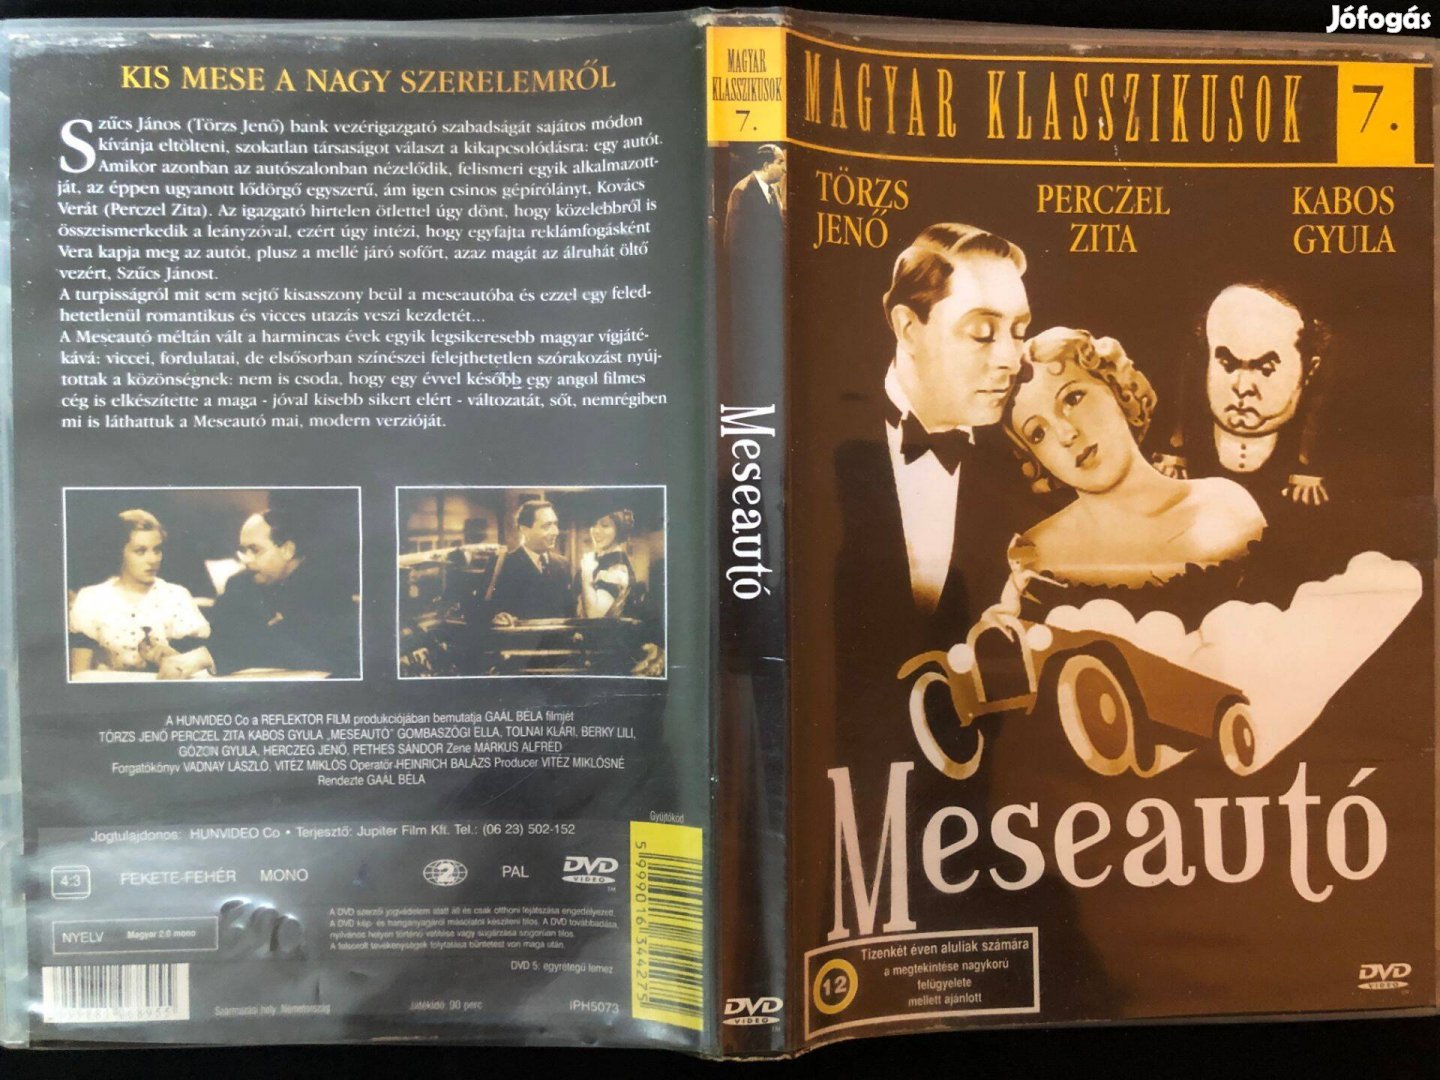 Meseautó DVD Magyar klasszikusok 7. (Kabos Gyula, Perczel Zita)